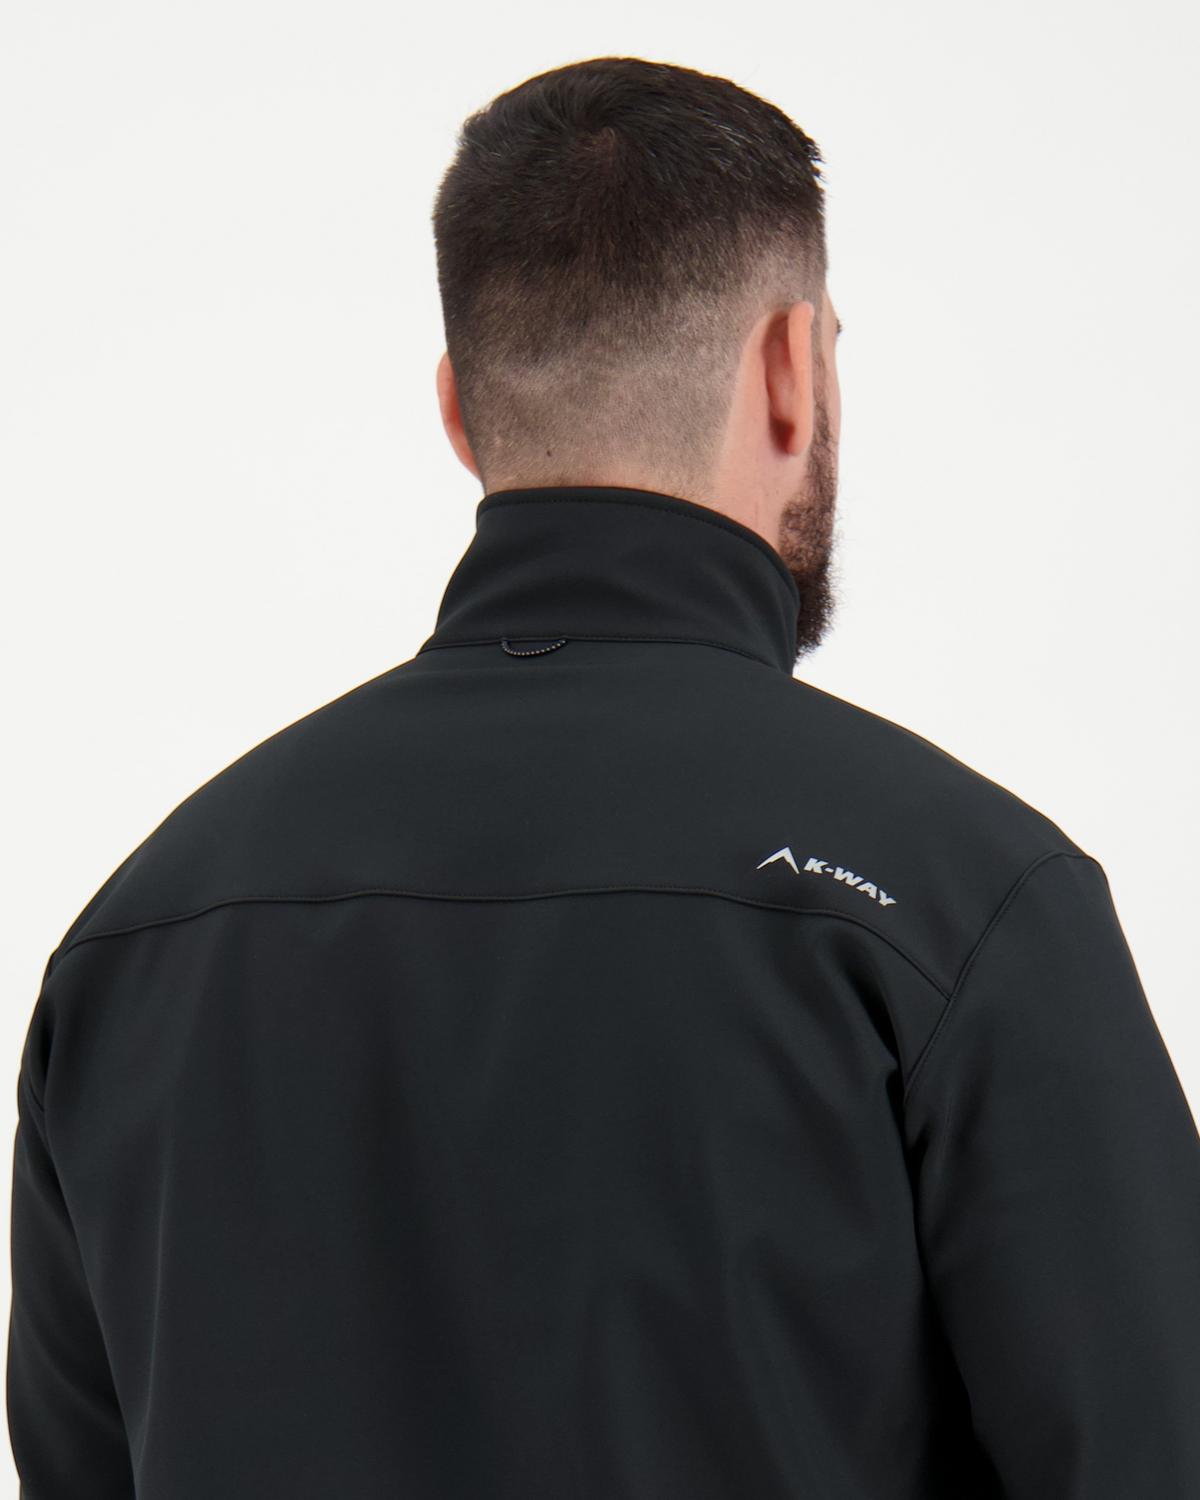 K-Way Men's Felixx Eco Softshell Jacket Extended Sizes -  Black